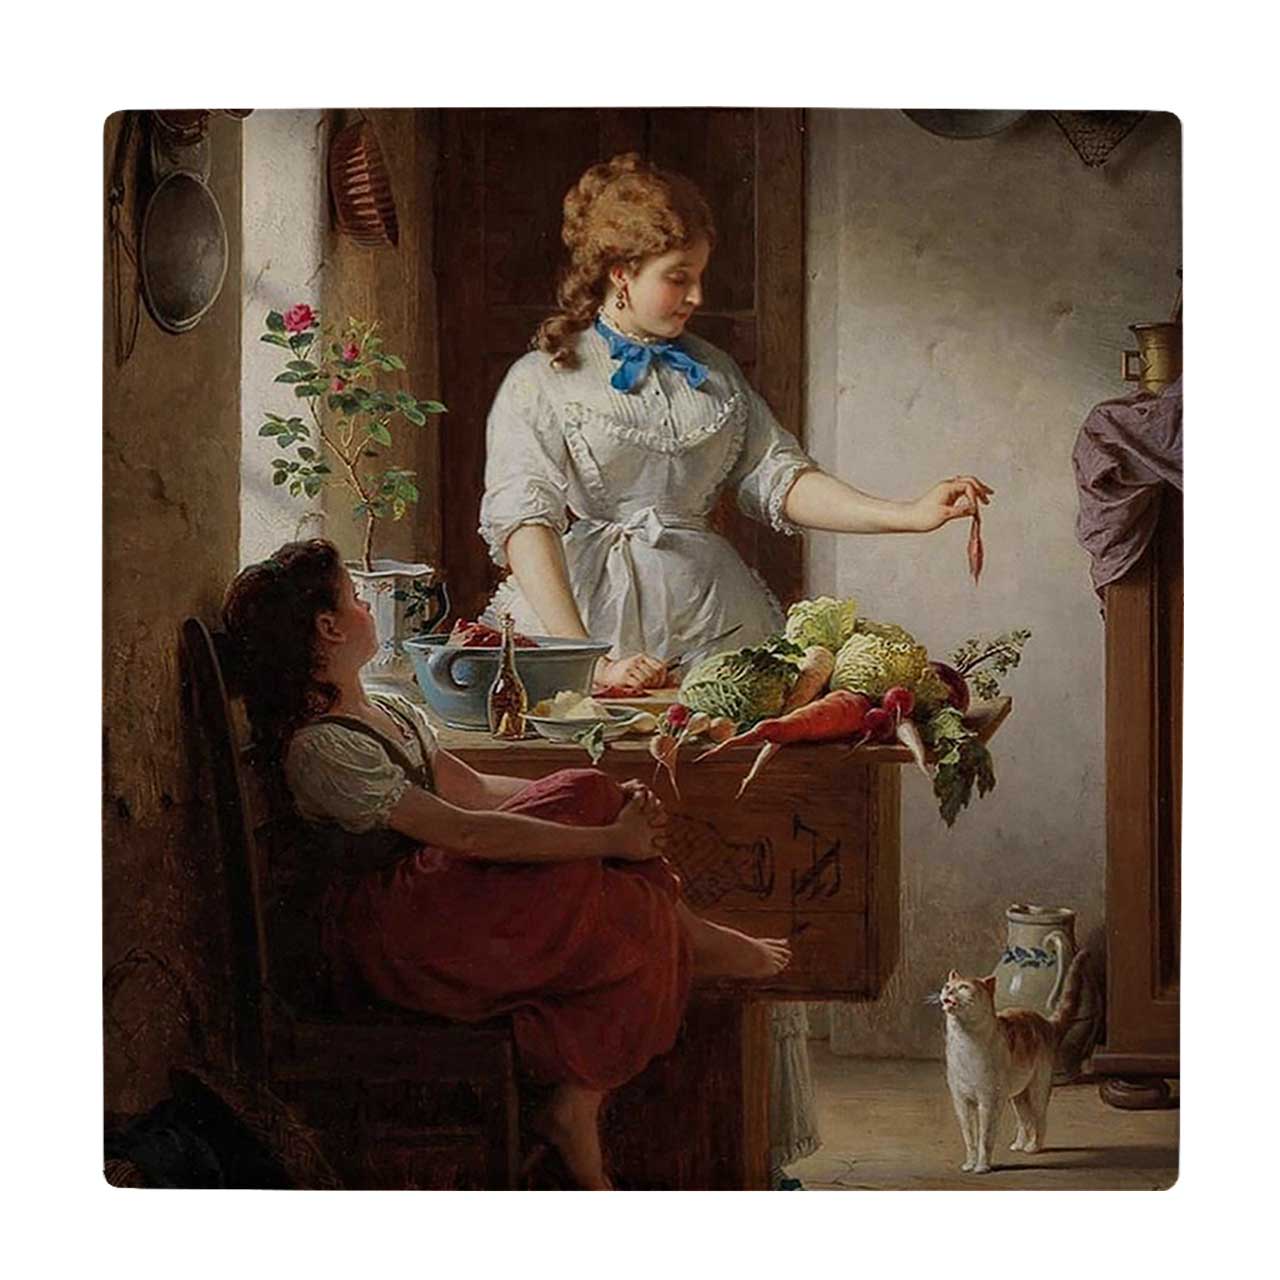  کاشی کارنیلا طرح نقاشی مادر و دختر و میز میوه کد wkk606